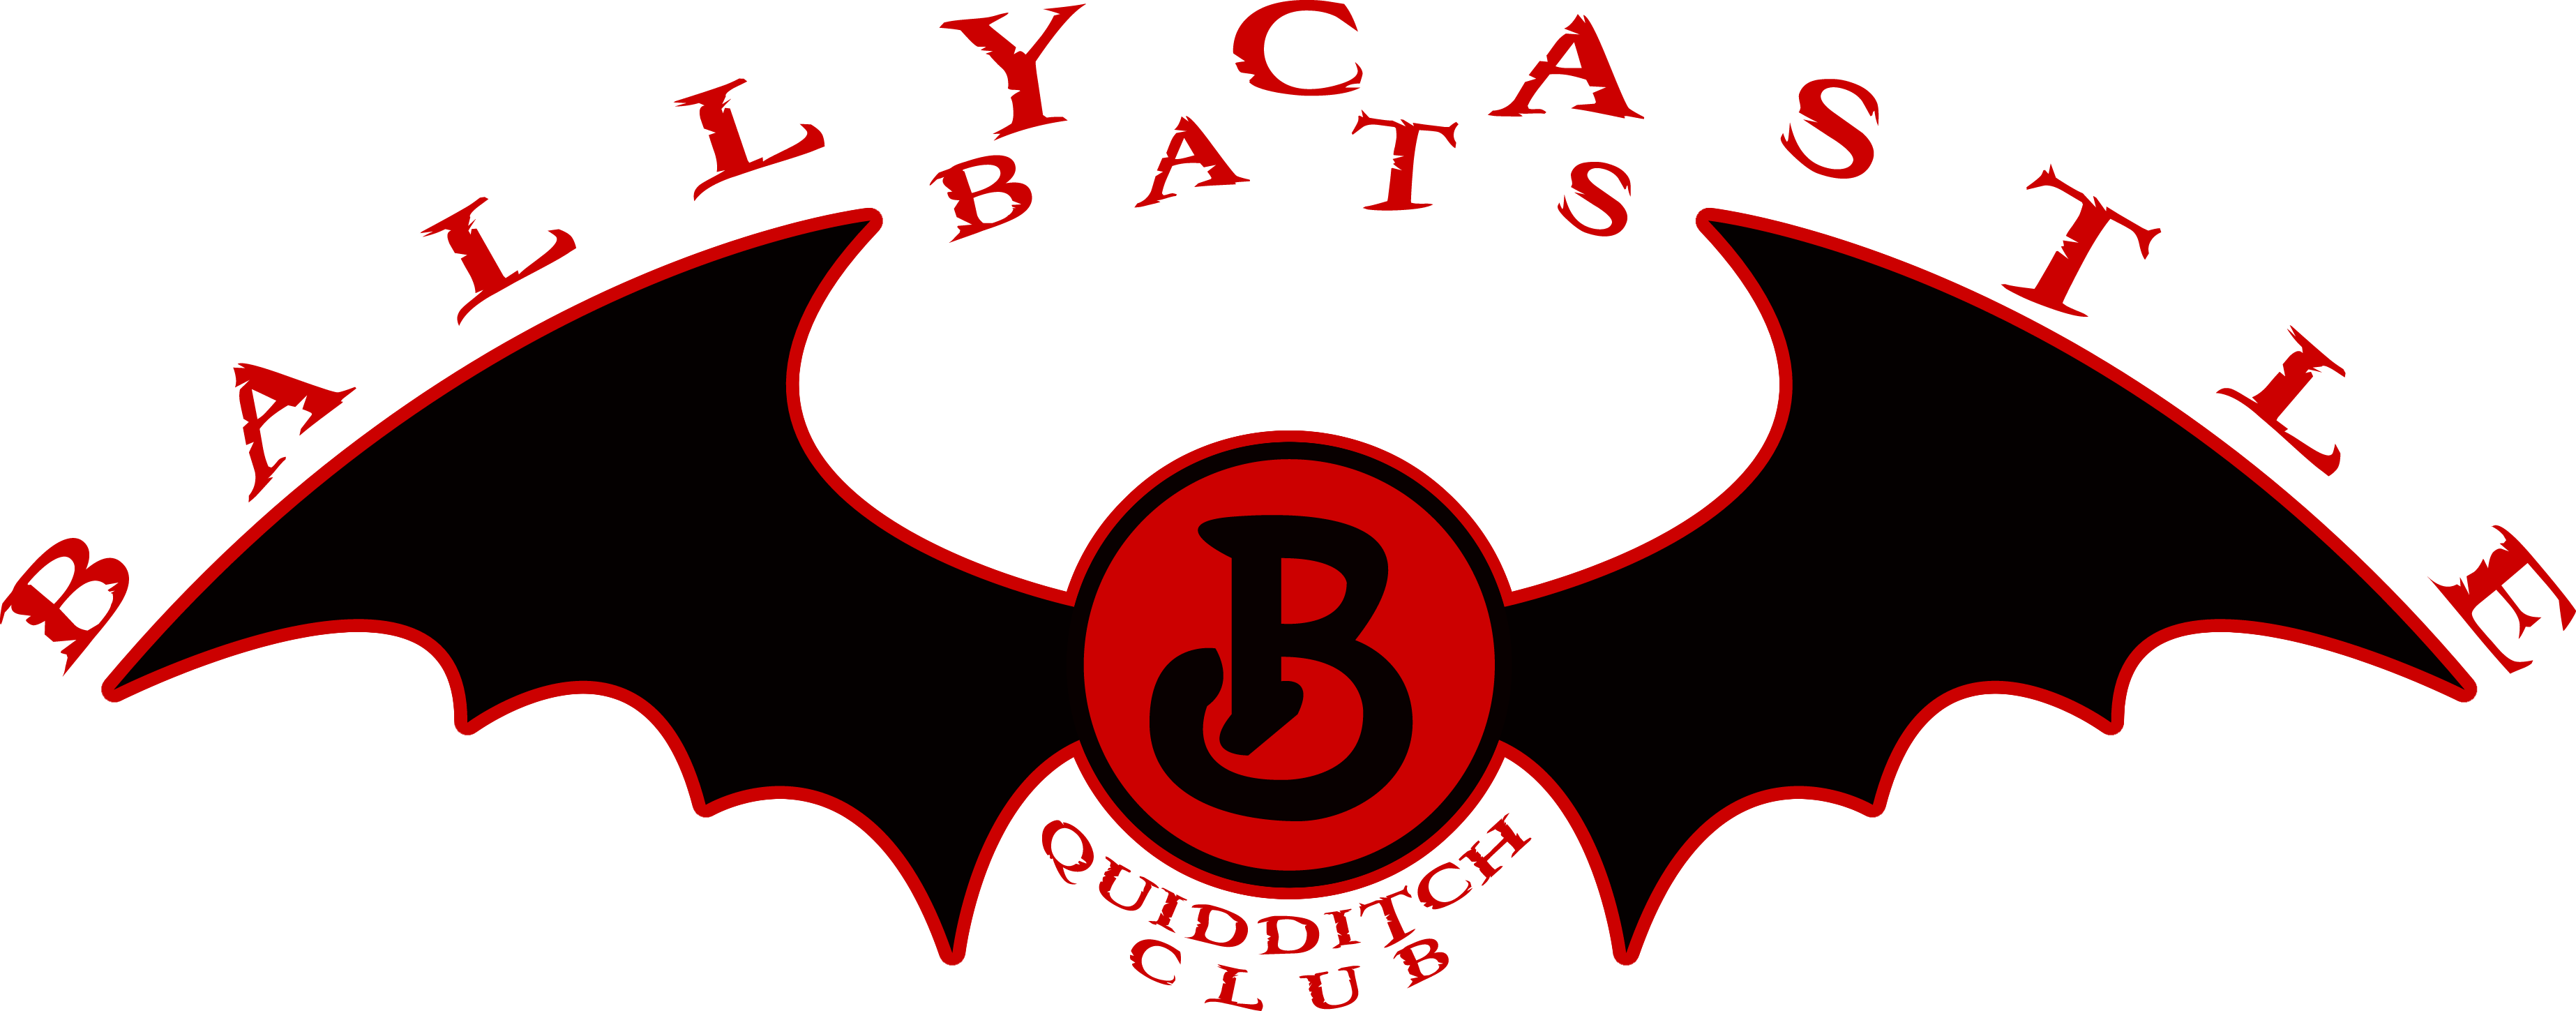 Bats Logo - Ballycastle Bats logo 2 – The Harry Potter Lexicon